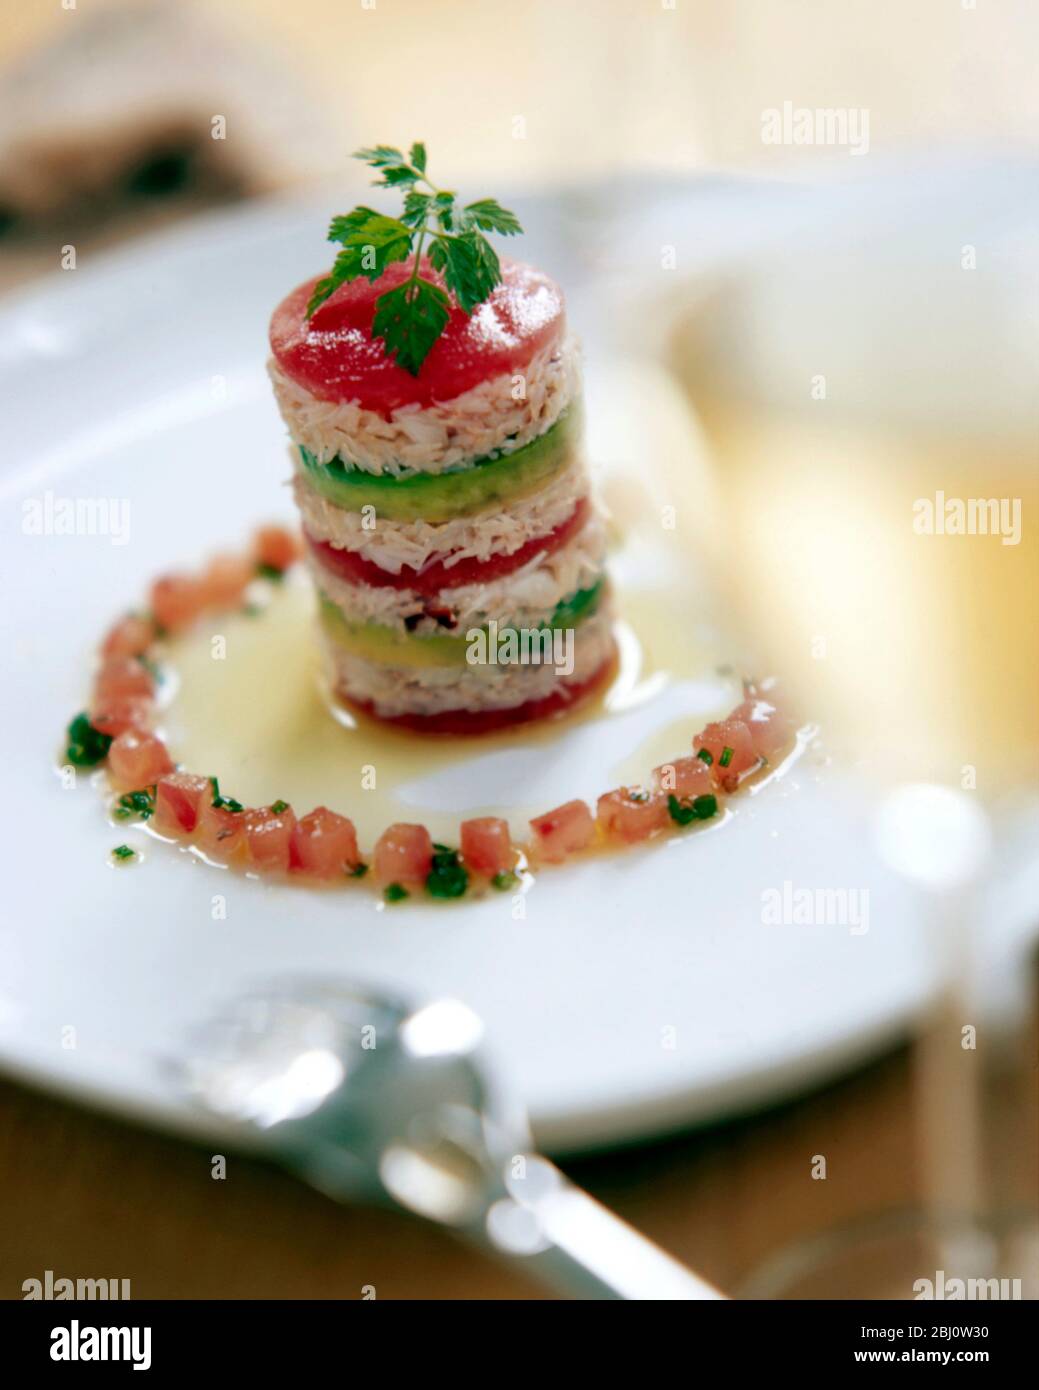 Eleganter Starter aus Krabbenfleisch, Avocado, Tomaten auf Teller mit Kreis von gewürfelten Tomaten und leichter Vinaigrette verziert - Stockfoto